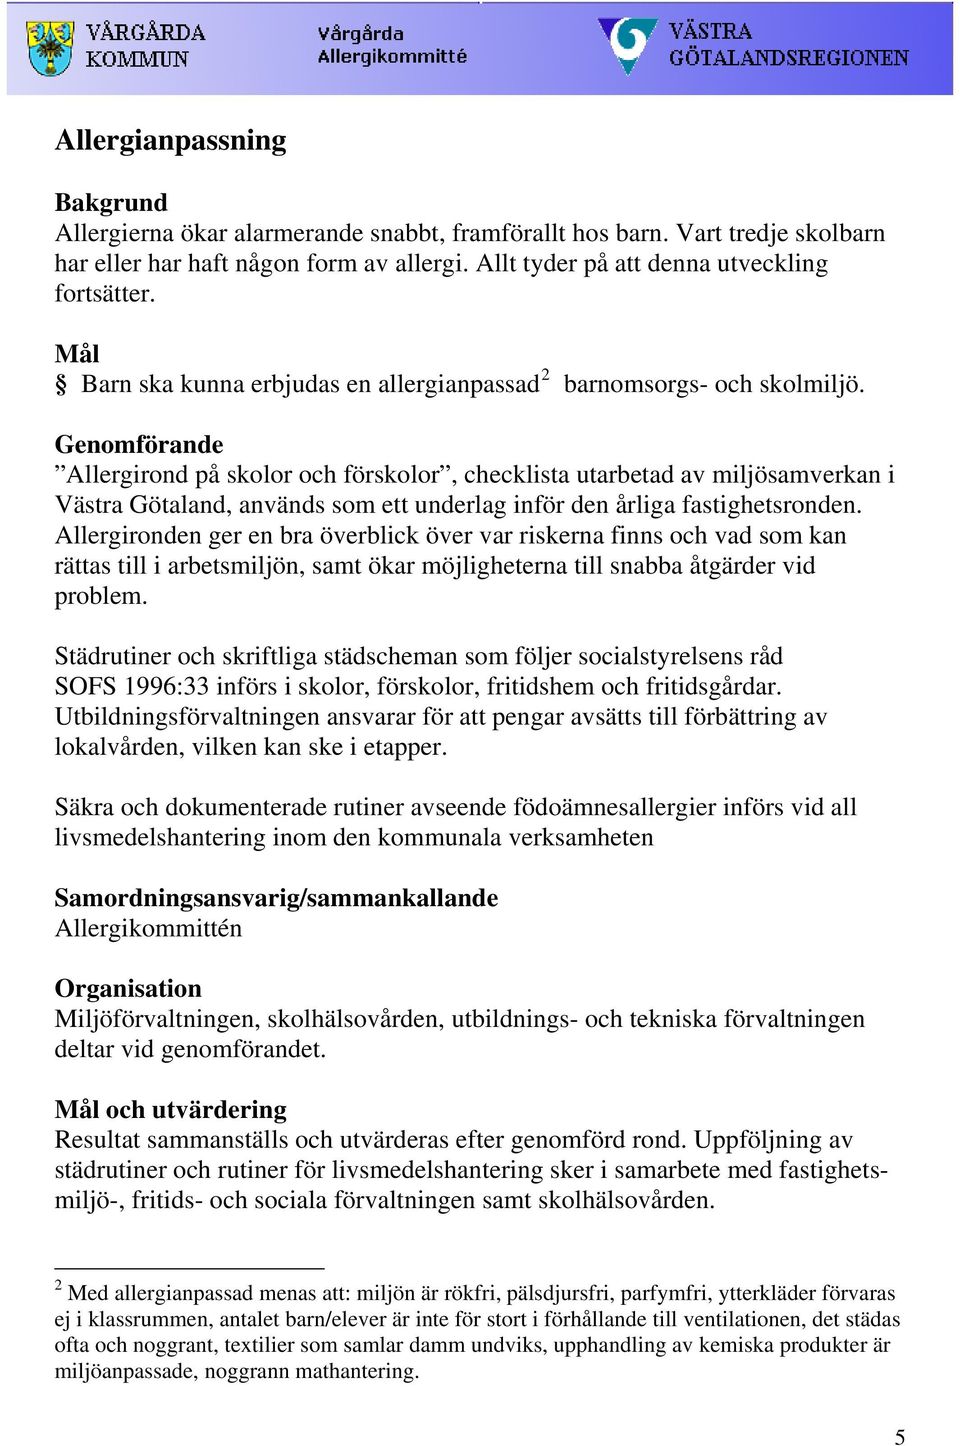 Genomförande Allergirond på skolor och förskolor, checklista utarbetad av miljösamverkan i Västra Götaland, används som ett underlag inför den årliga fastighetsronden.